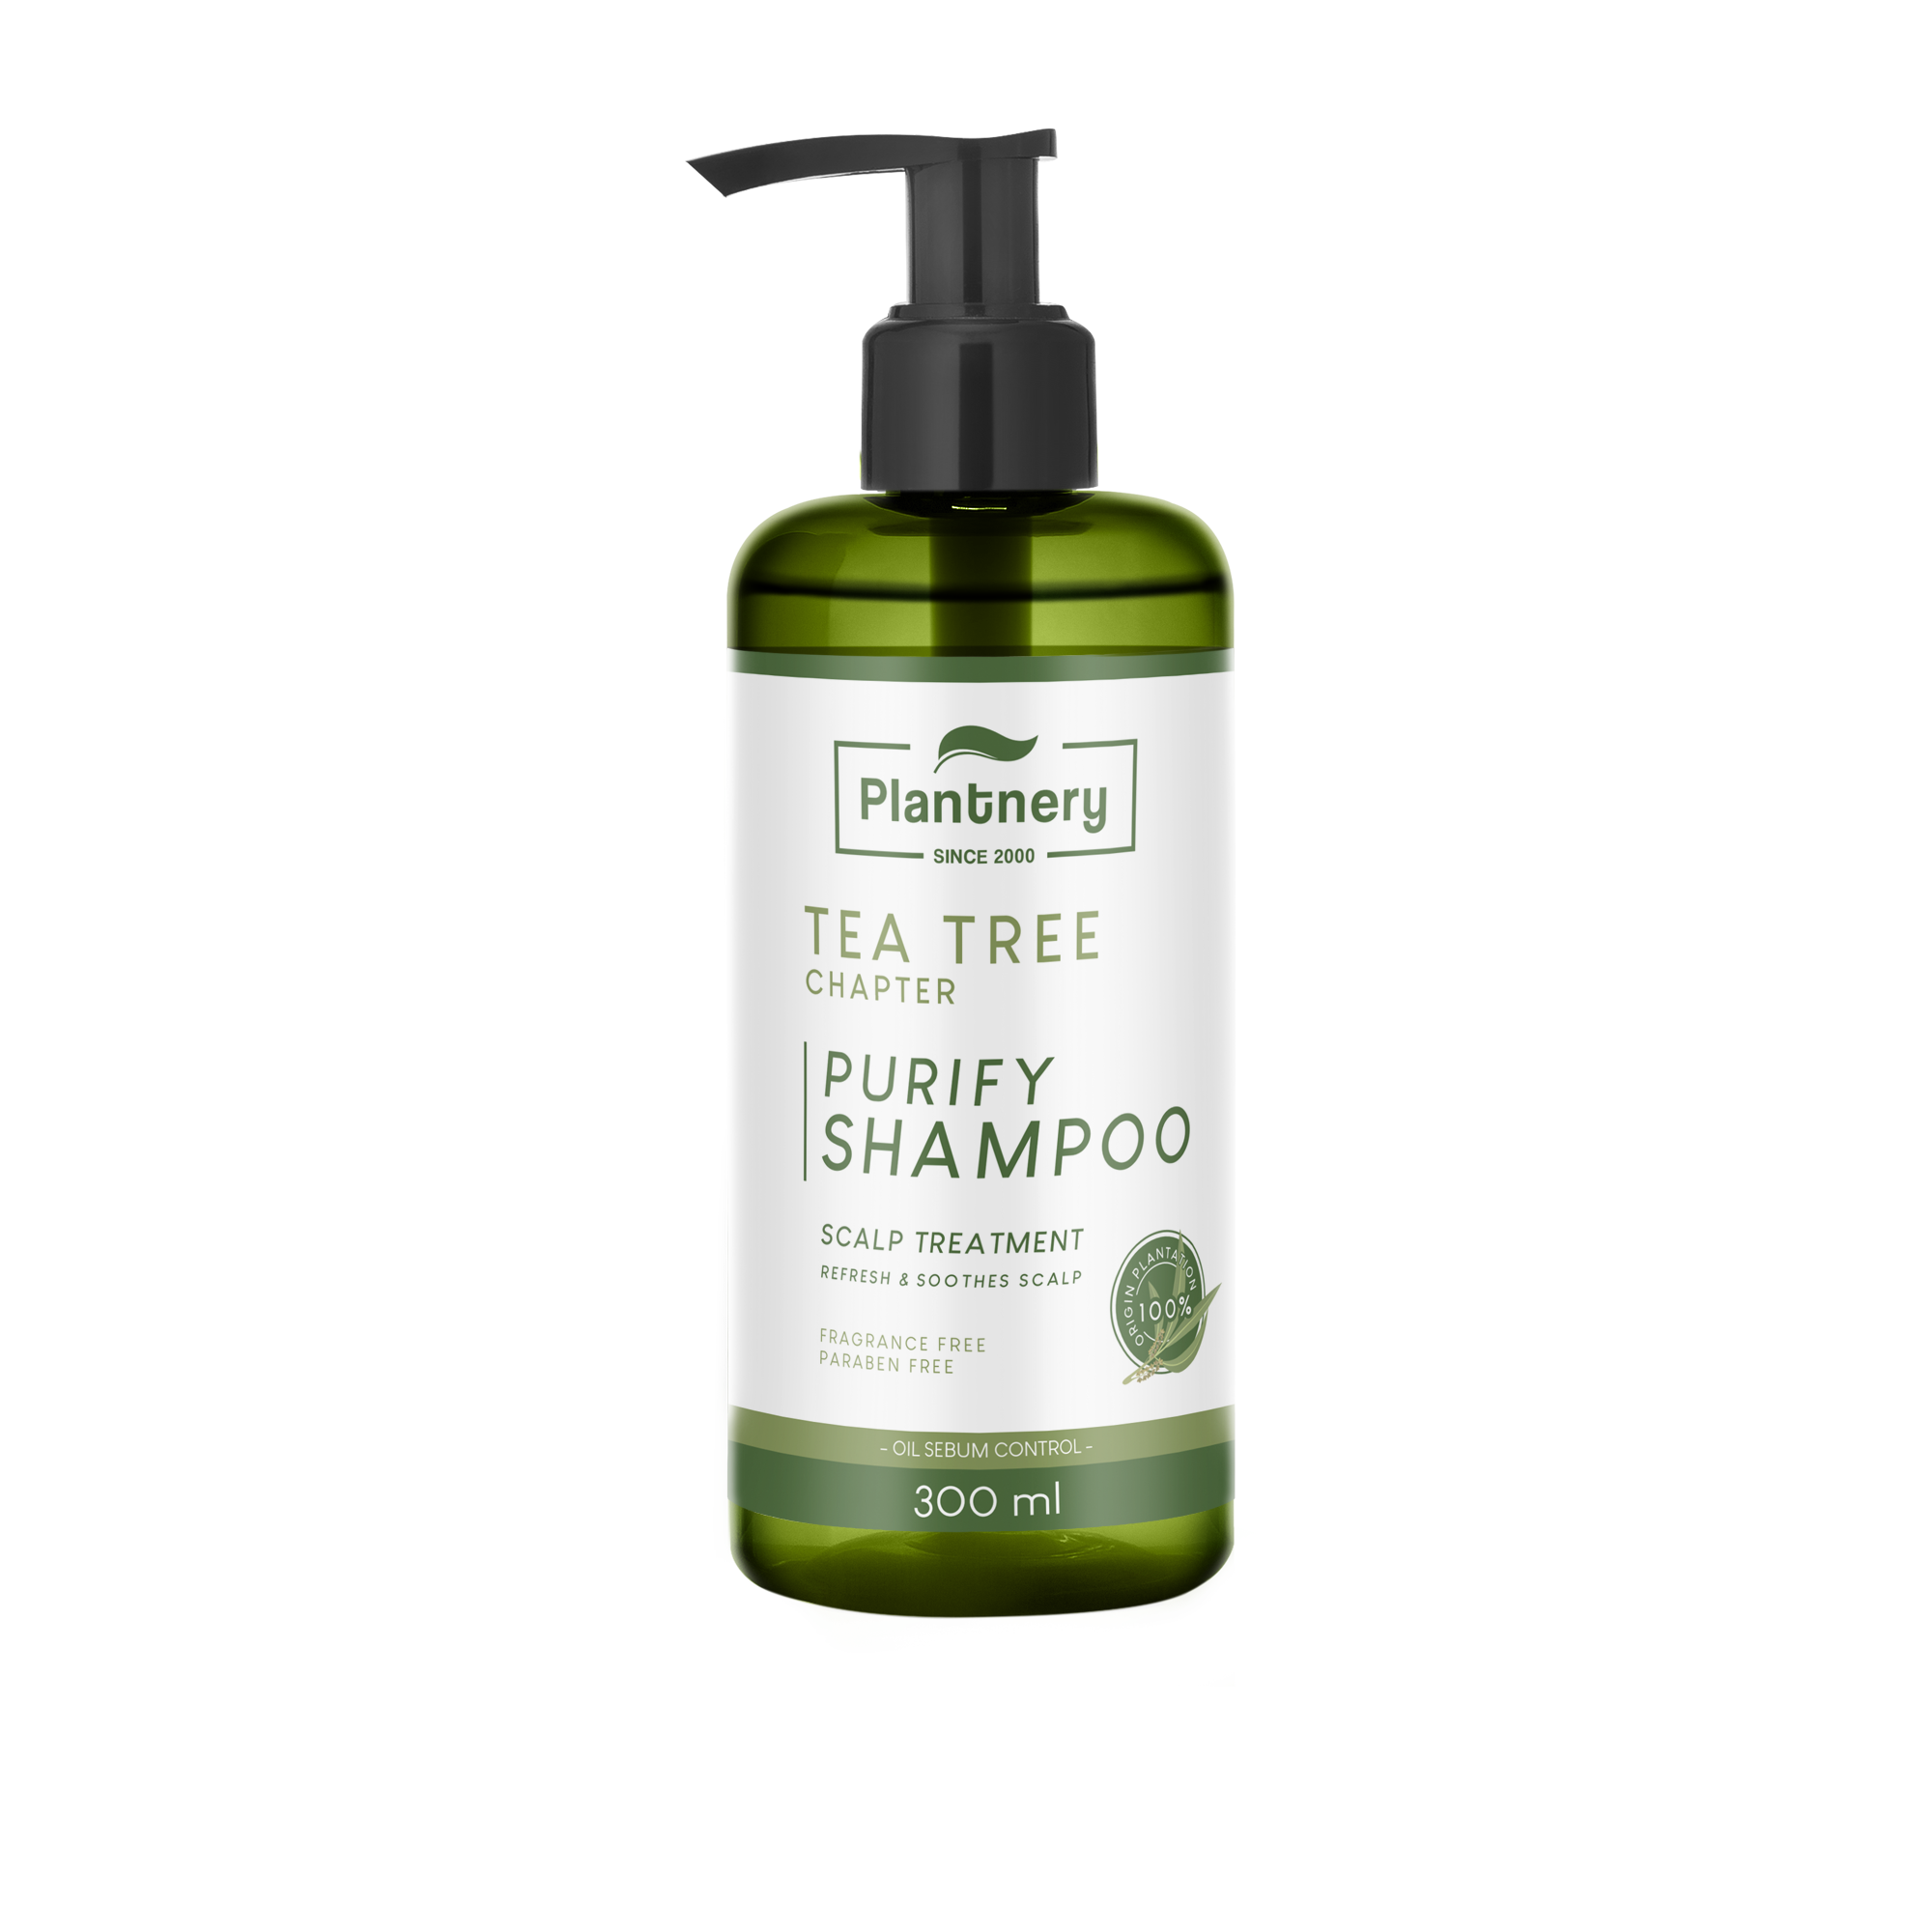 Tea tree purify shampoo